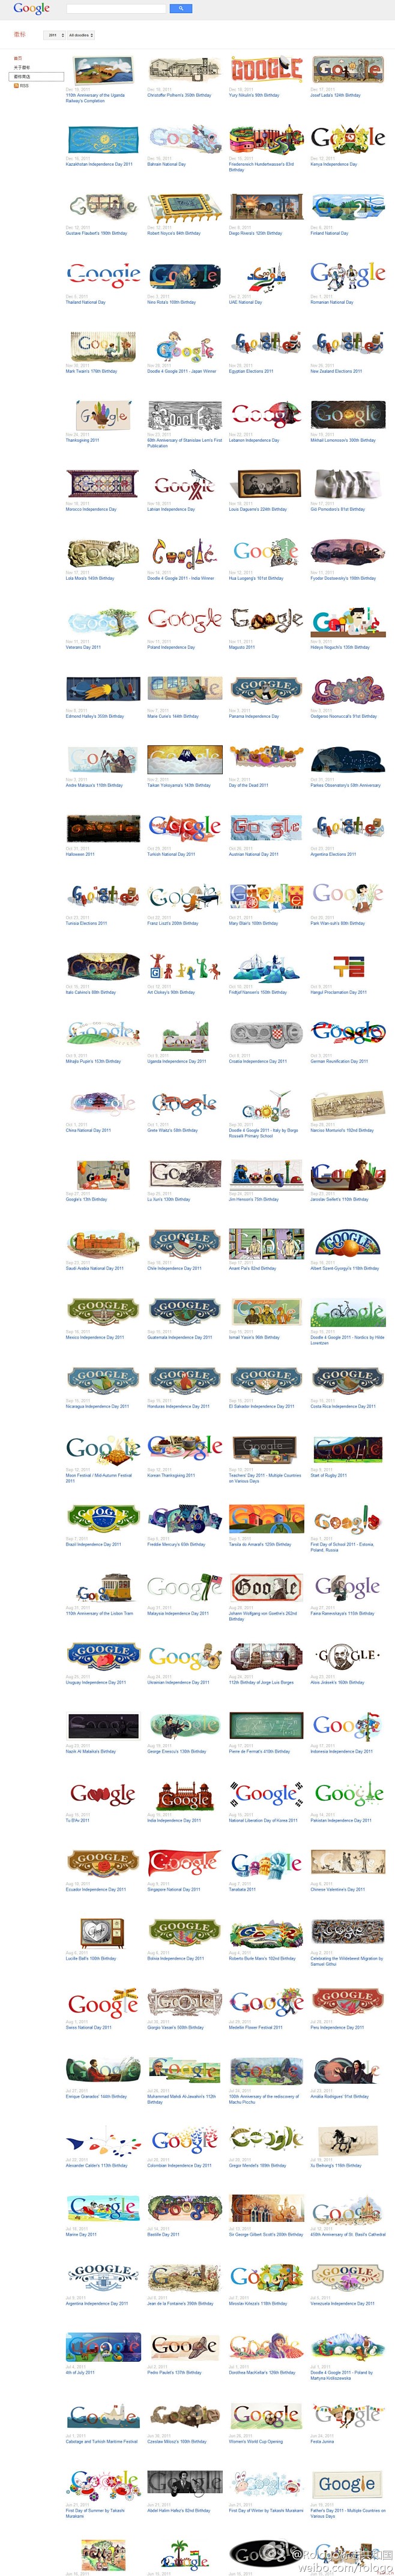 谷歌的各种节日logo